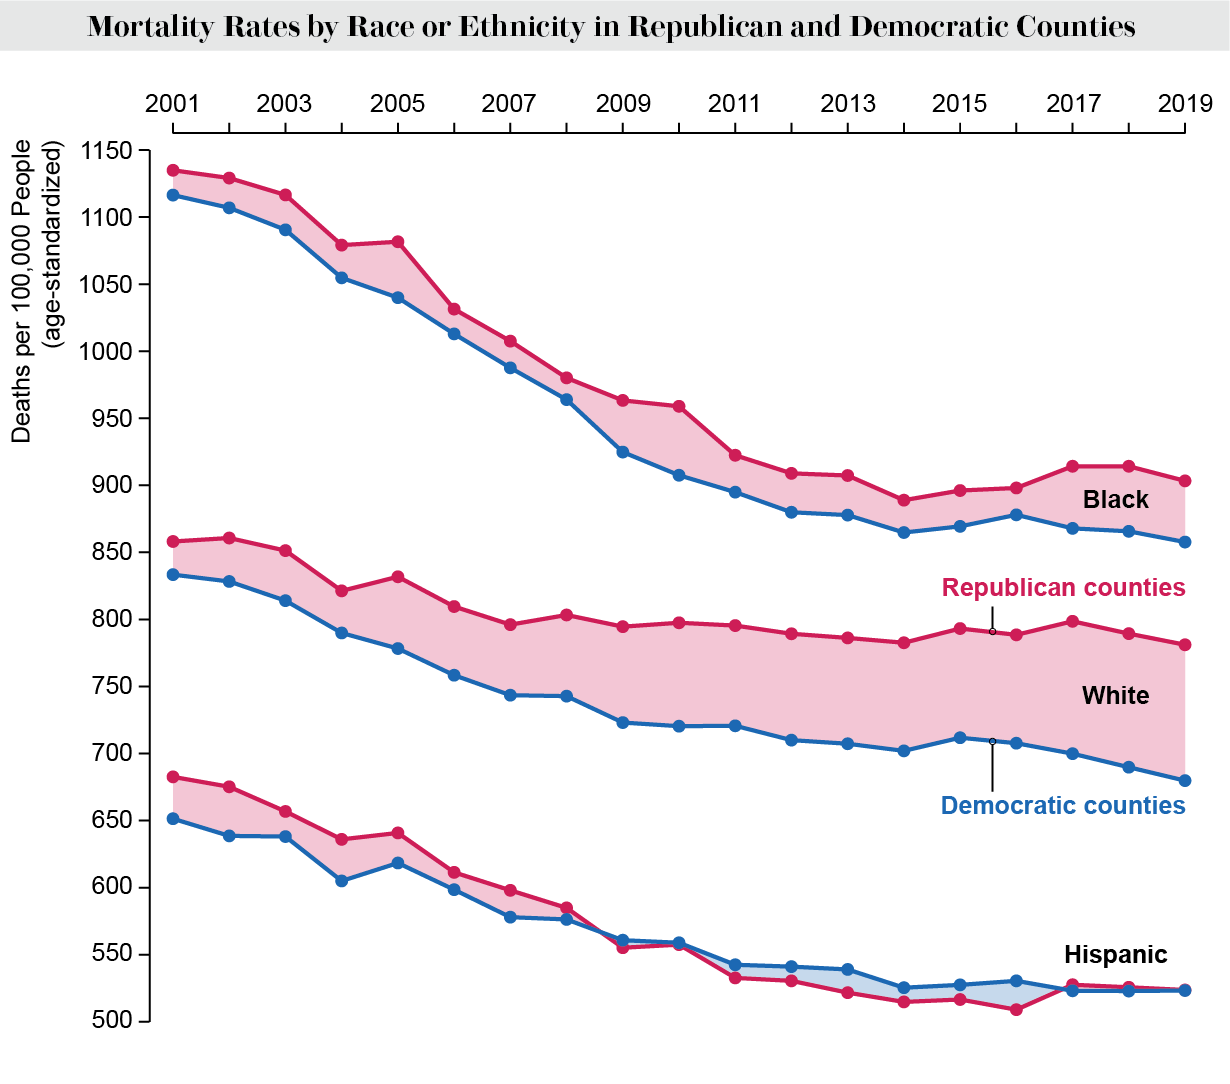 El gráfico de líneas muestra las tasas de mortalidad por raza o etnia en los condados republicanos y demócratas de EE. UU. desde 2001 hasta 2019.